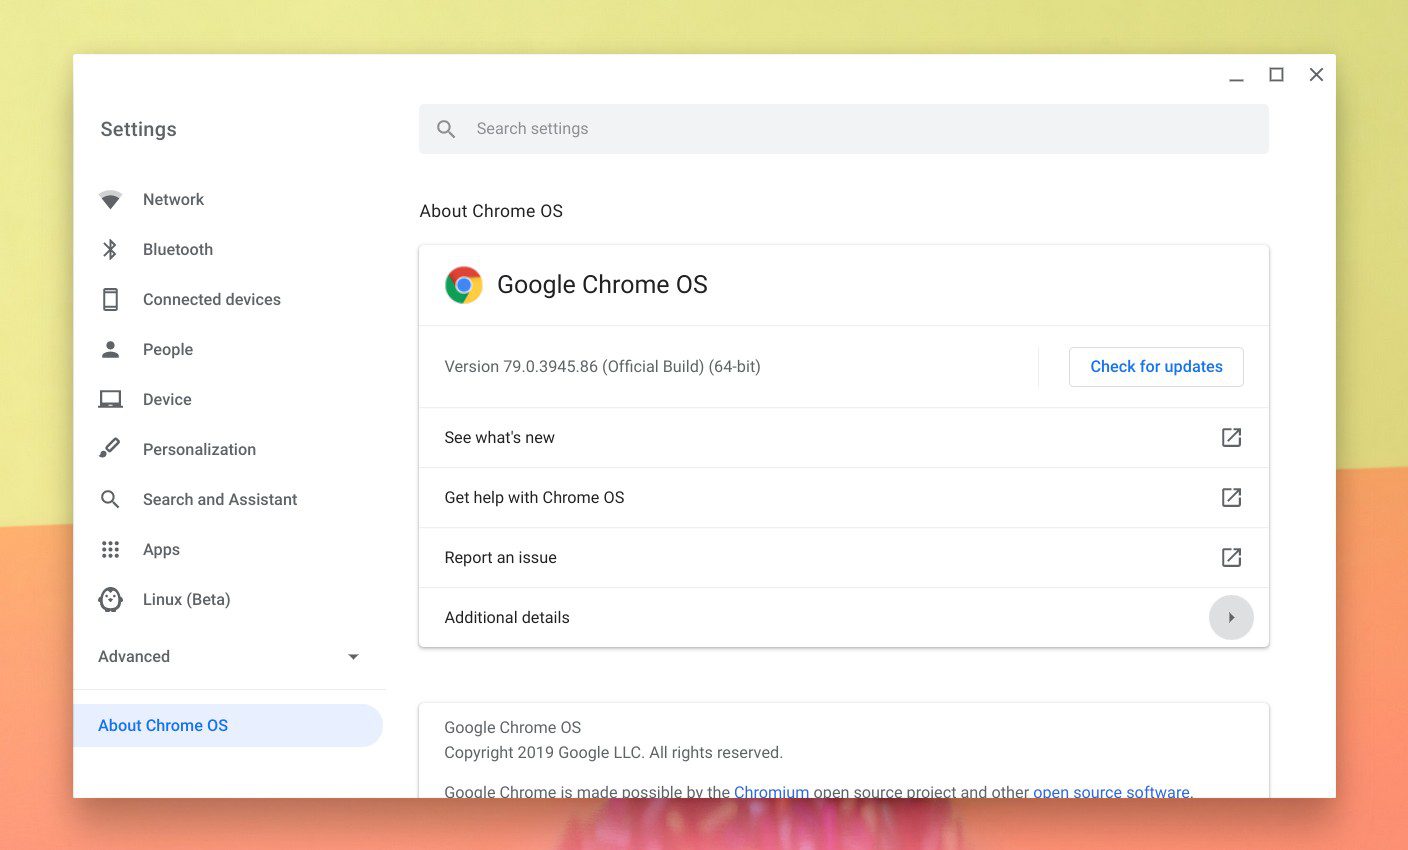 Configuración: Acerca de Chrome OS